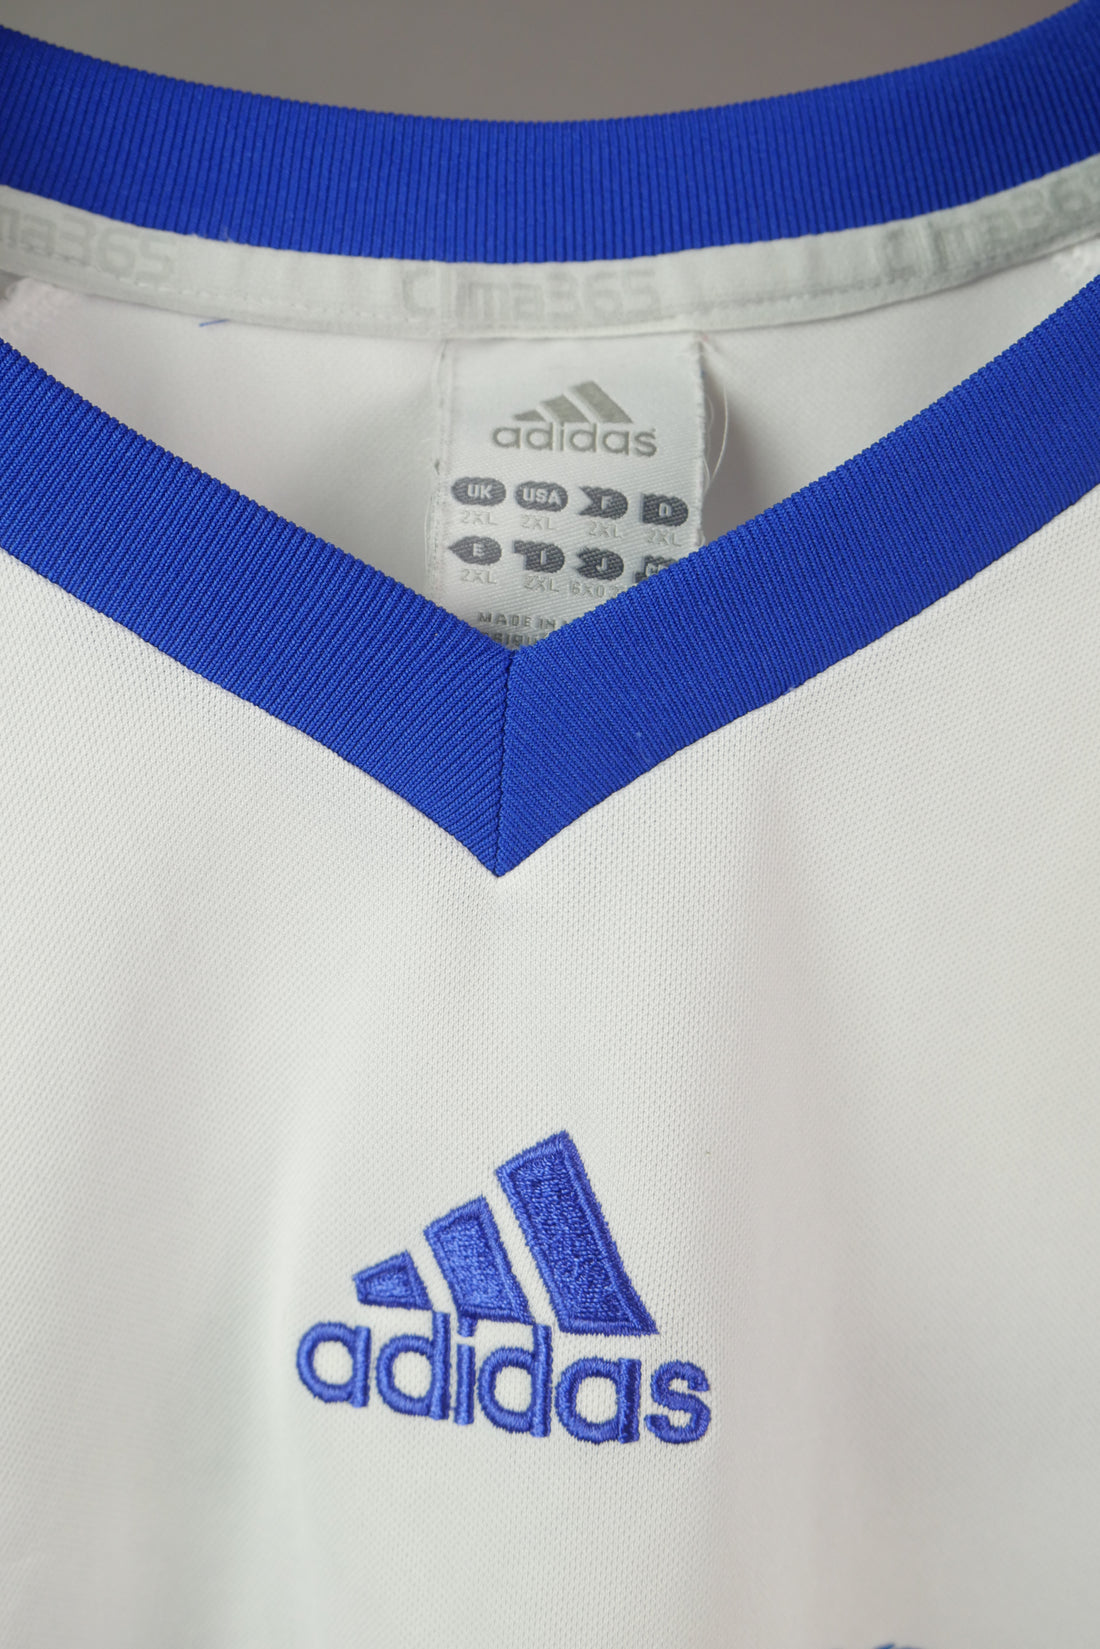 The Adidas Coach Football Shirt (M)